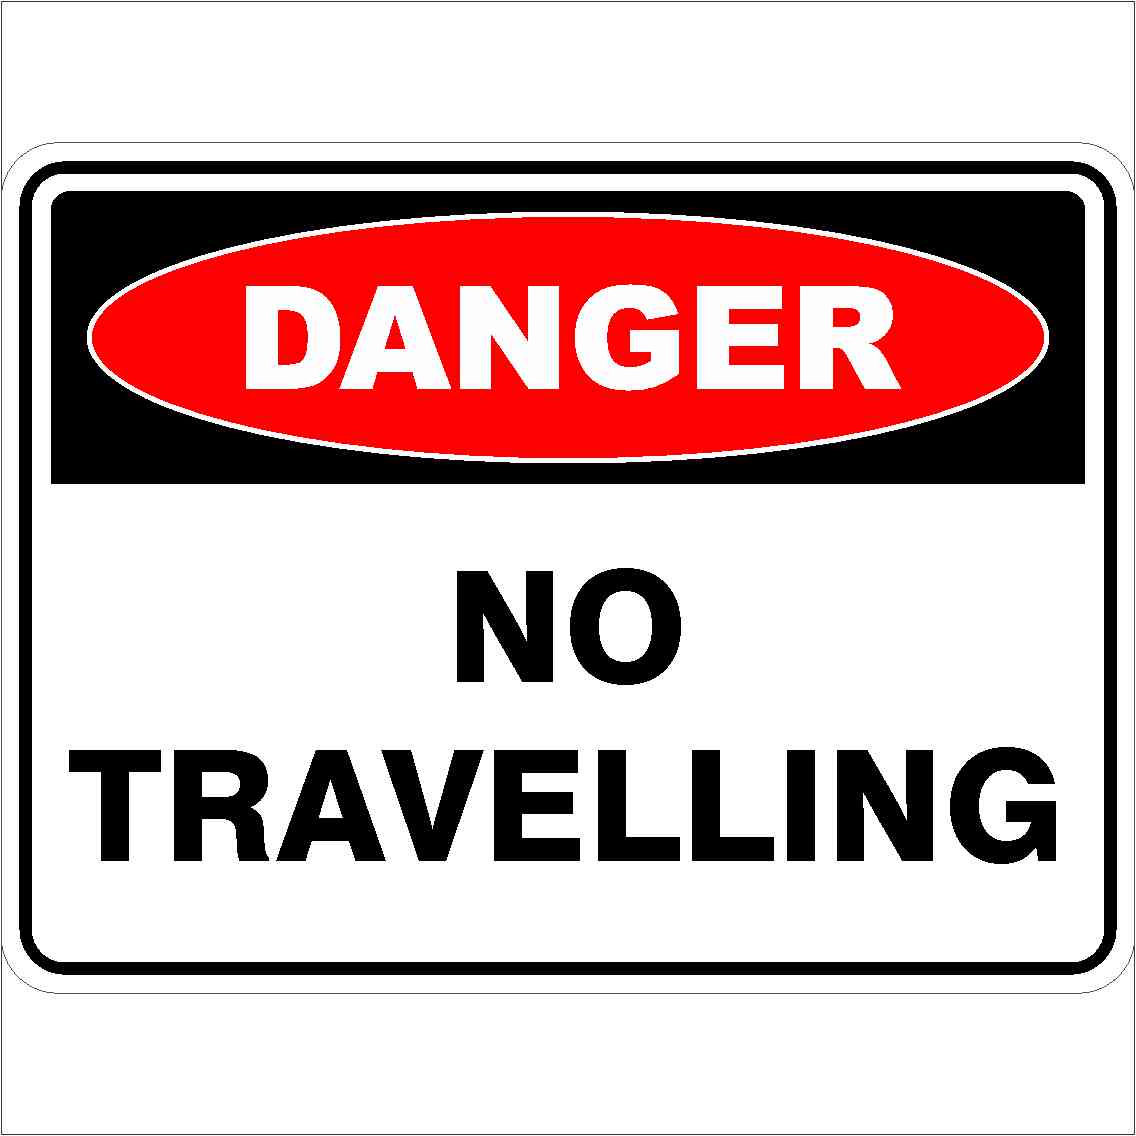 do not travel